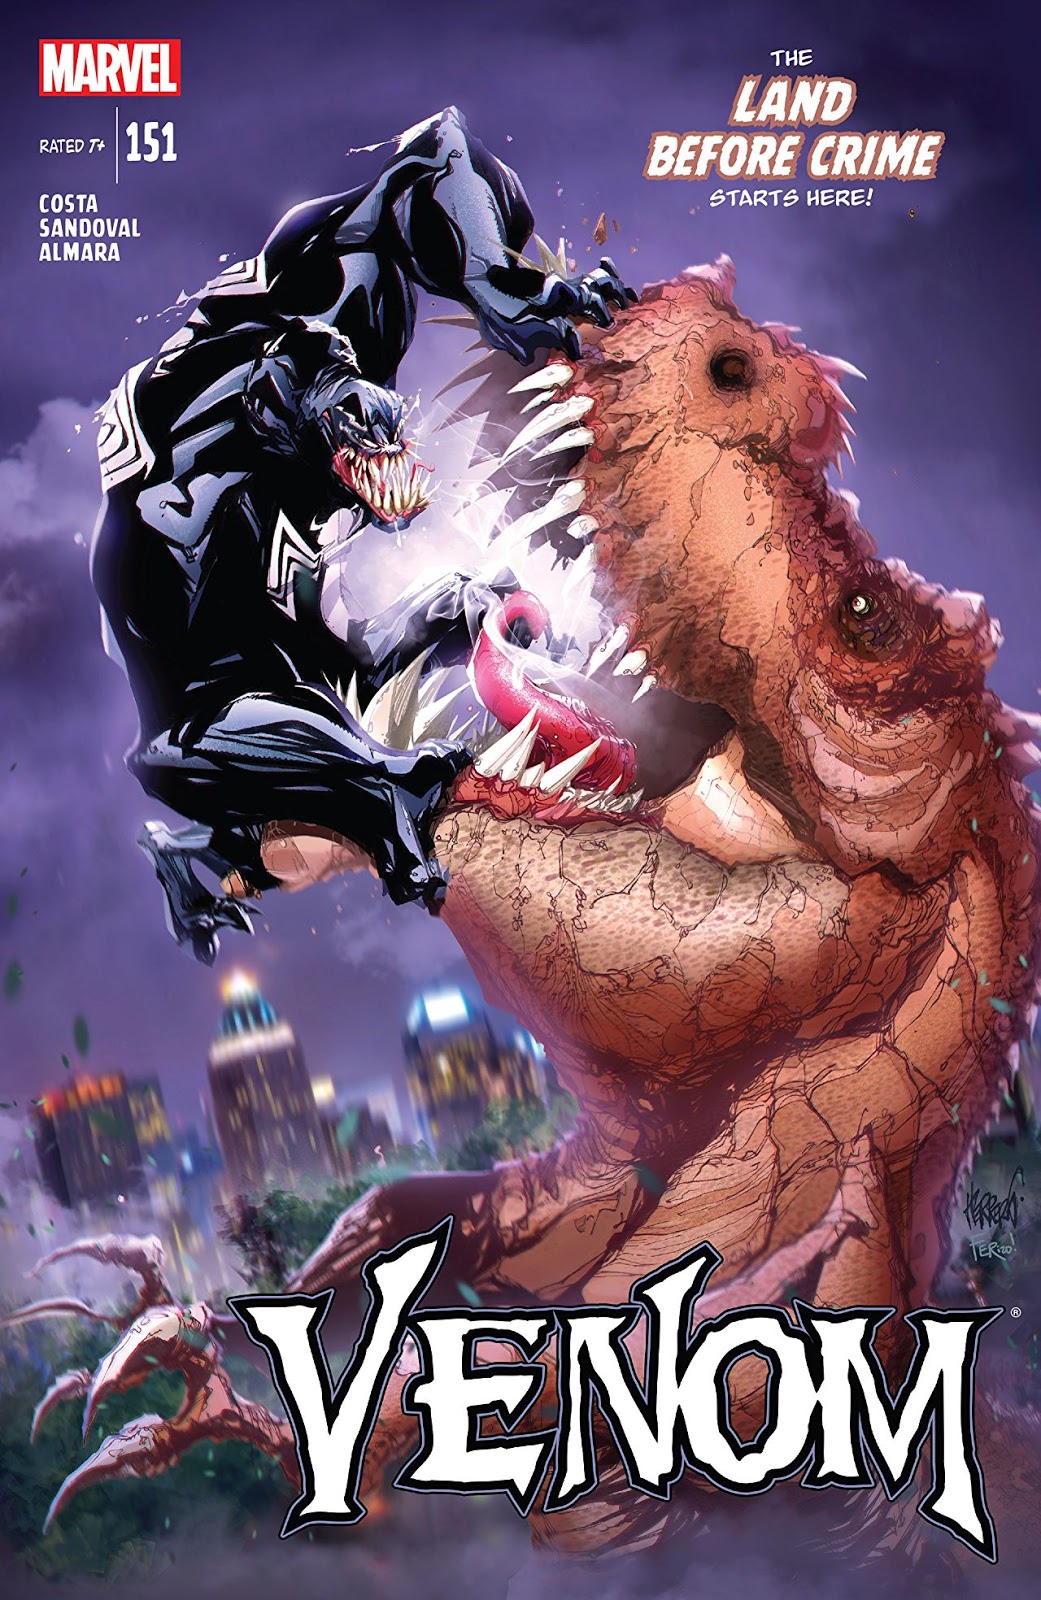 Weird Science DC Comics: Venom #151 Review - Marvel Monday